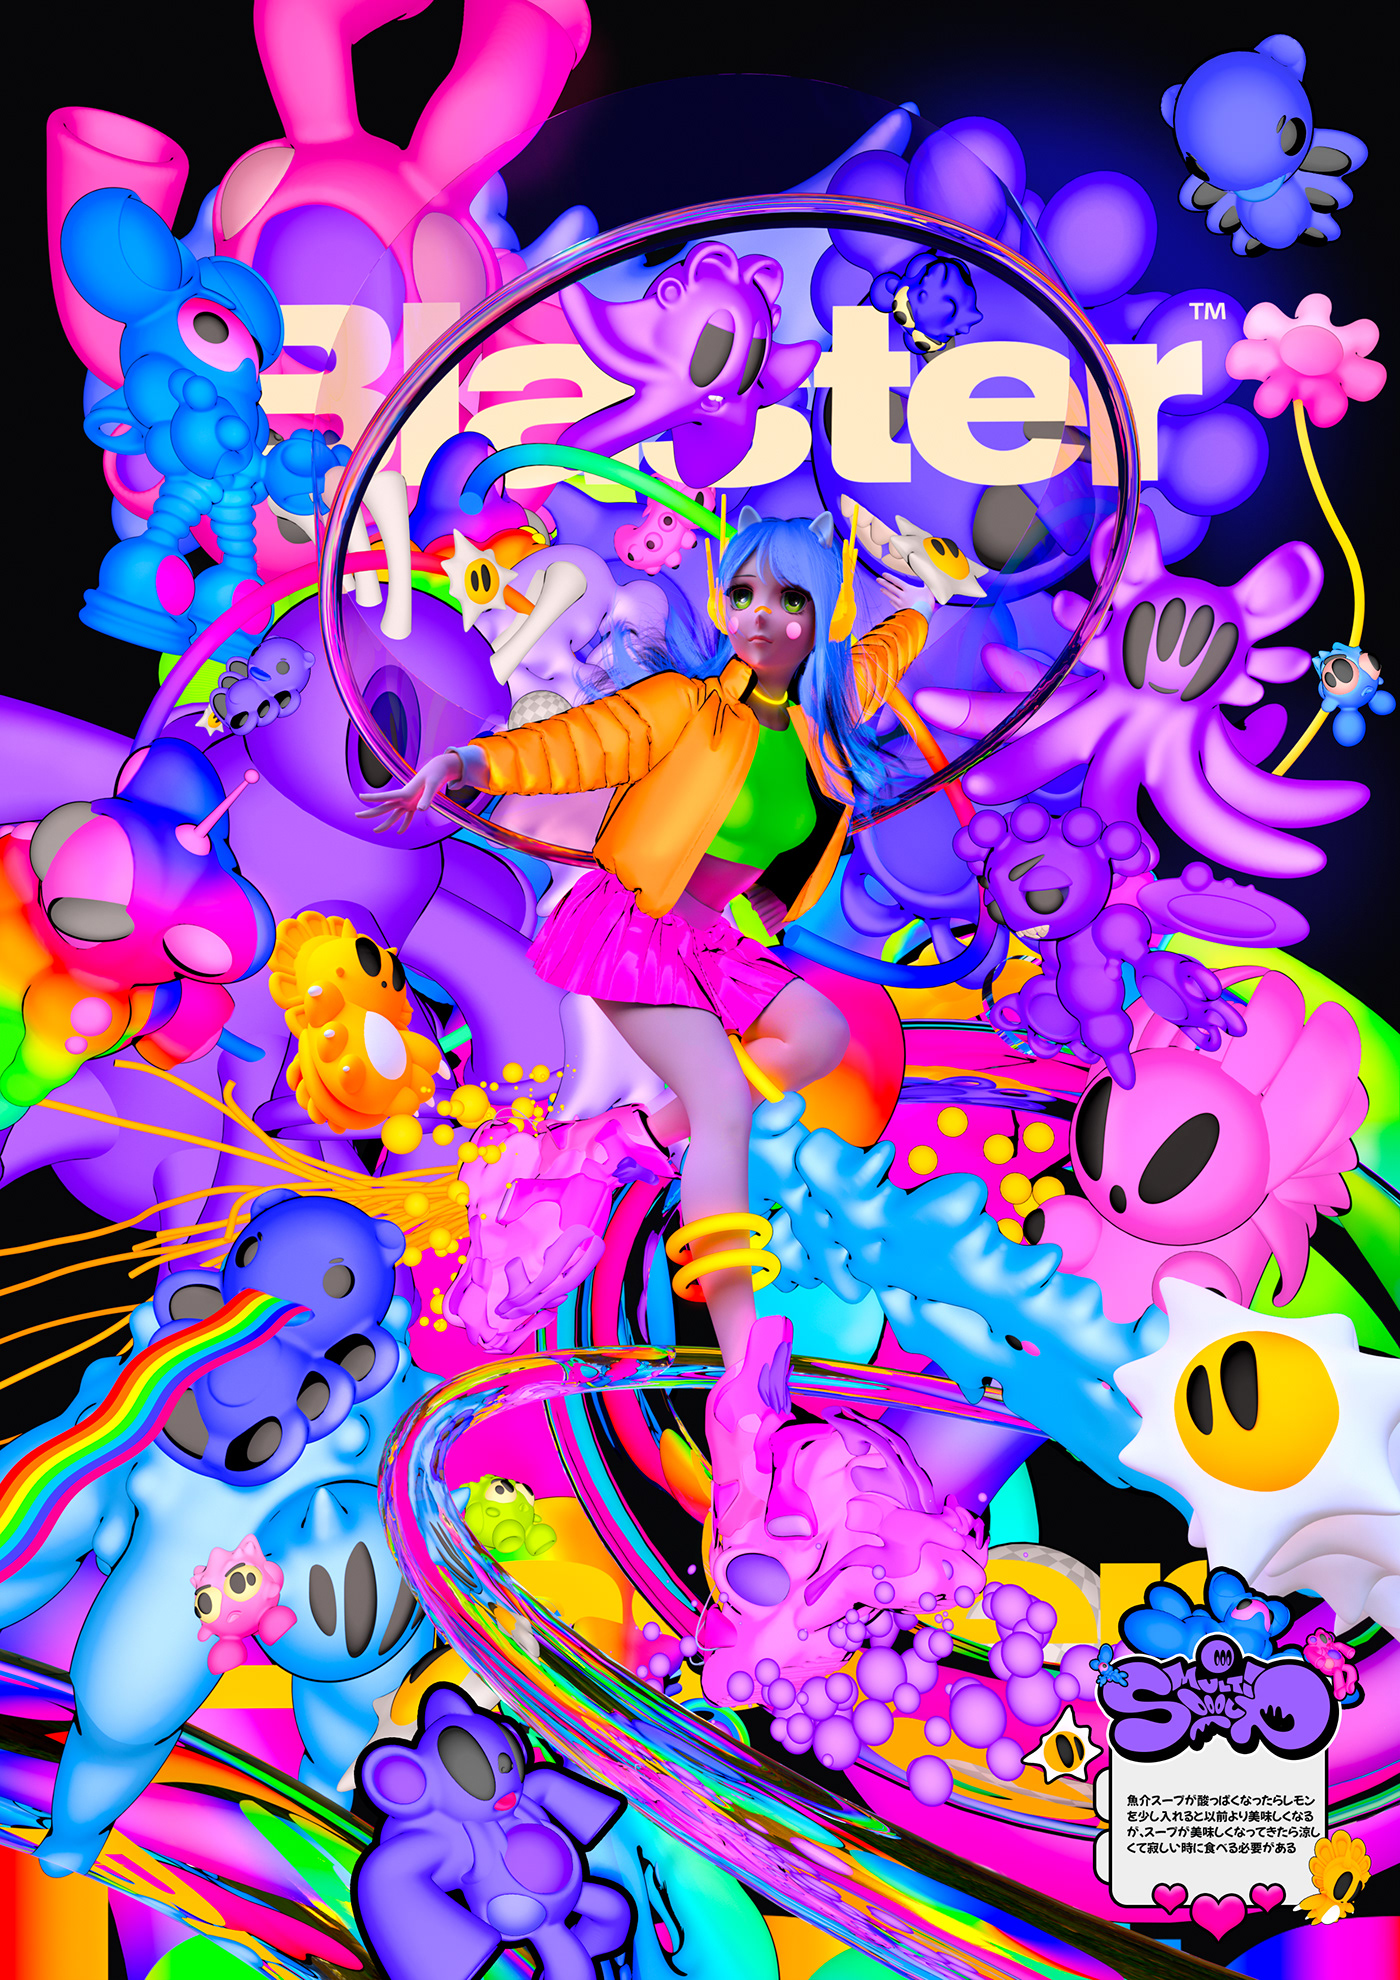 3D 3d design c4d Digital Art  Cyberpunk cyber neon poster Graphic Designer acid